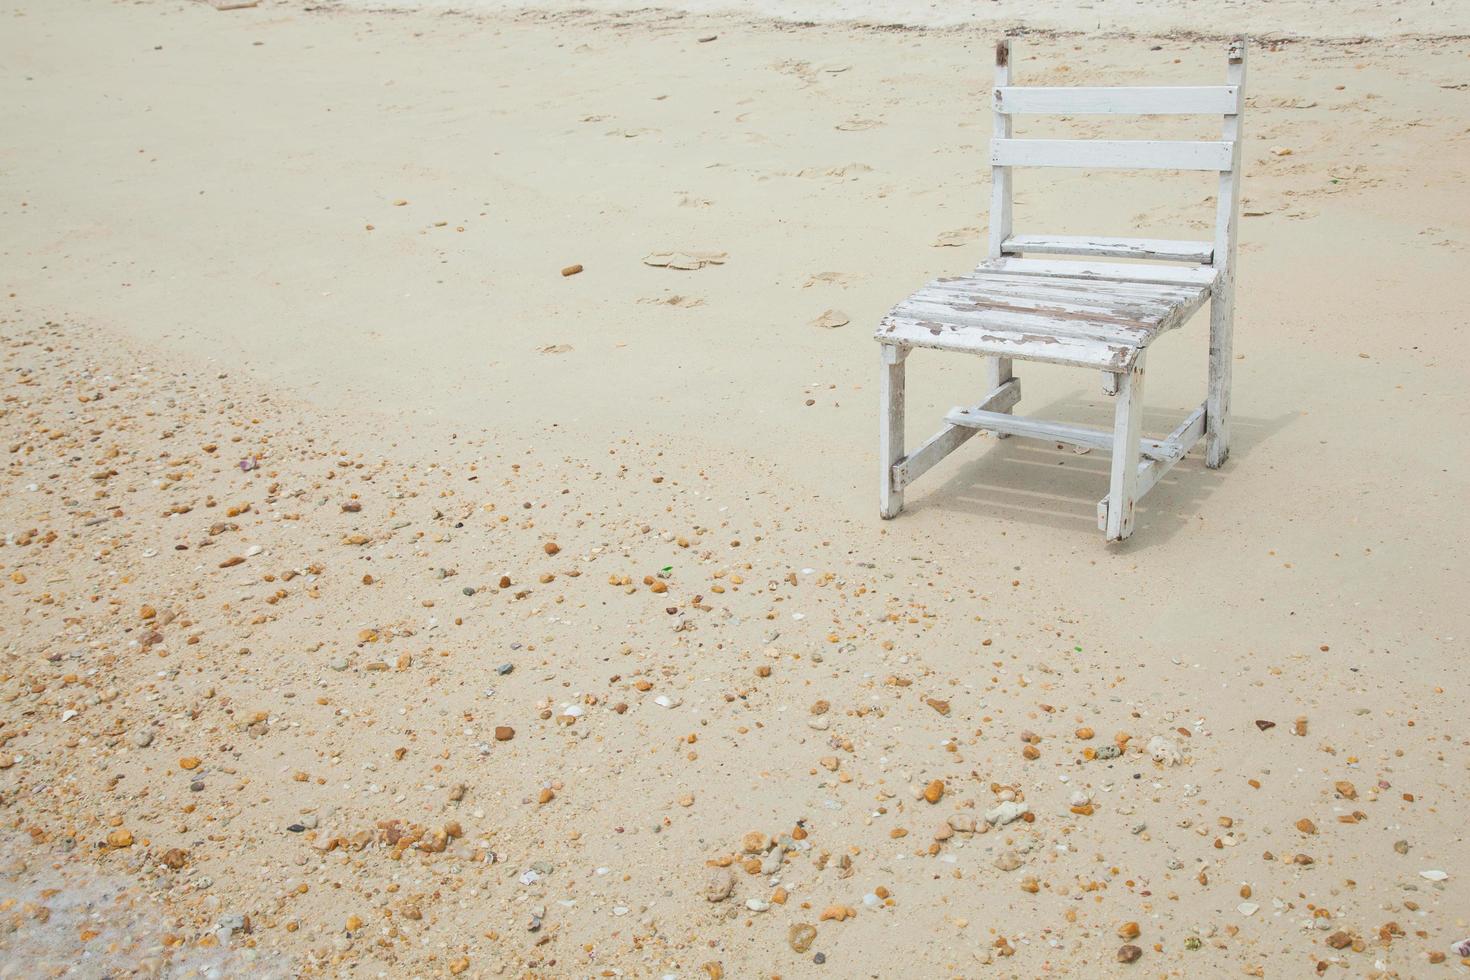 chaise en bois blanche à la mer photo